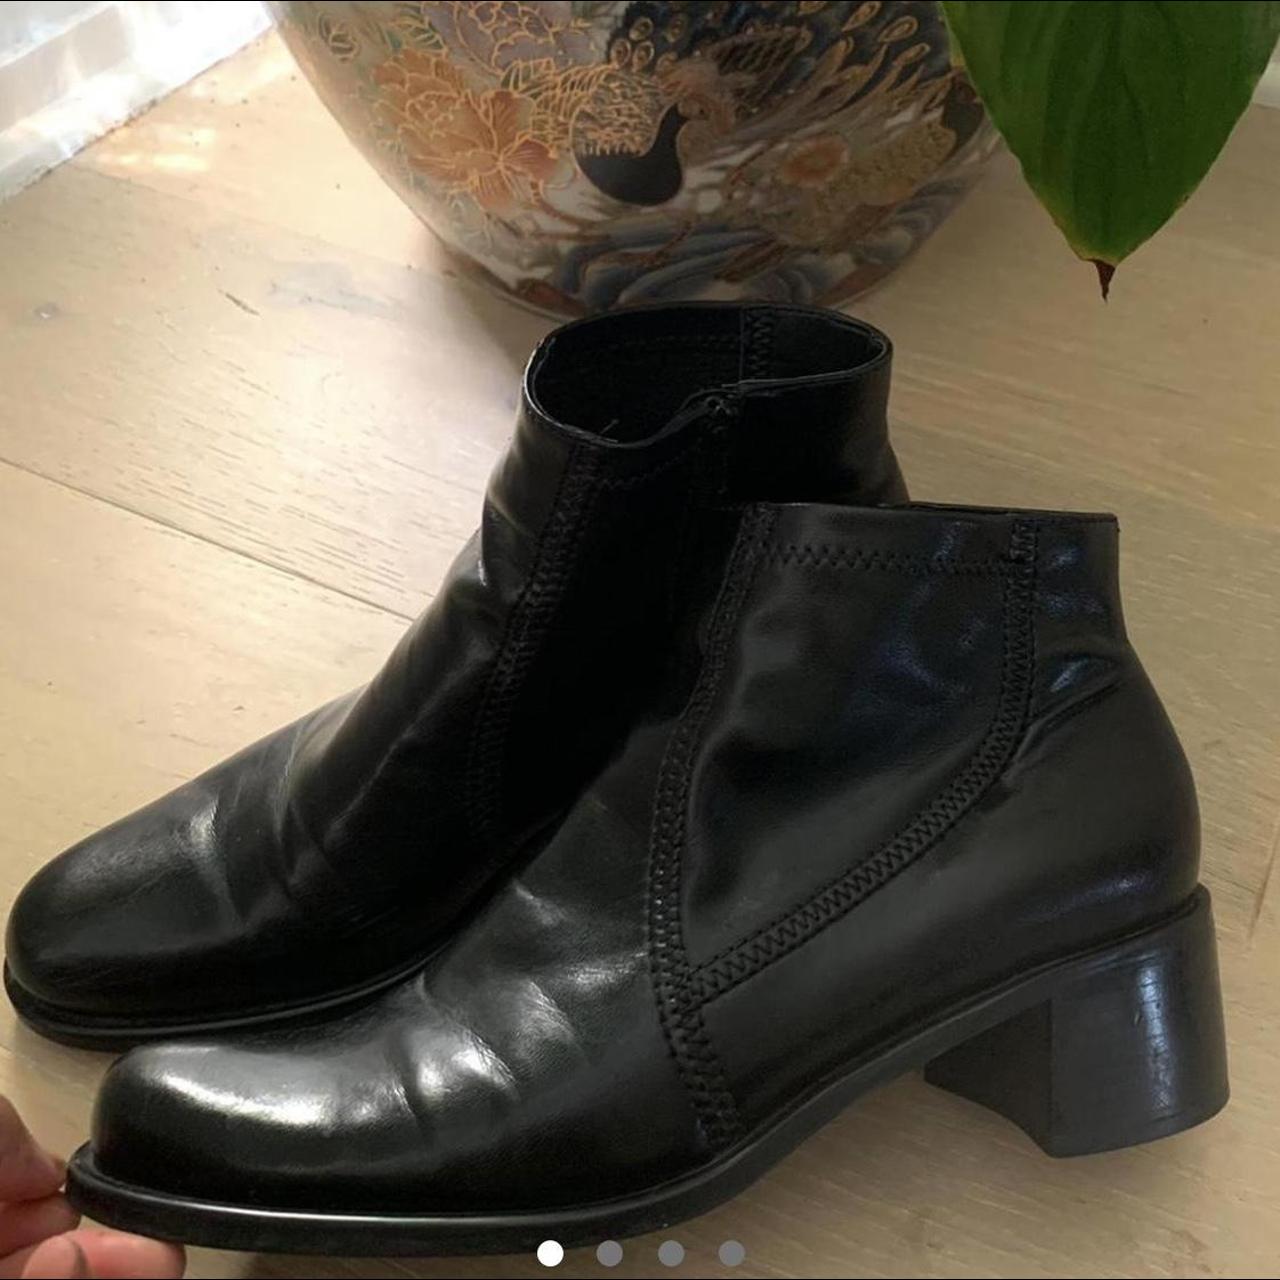 vintage franco sarto leather boots for sale! minor... - Depop